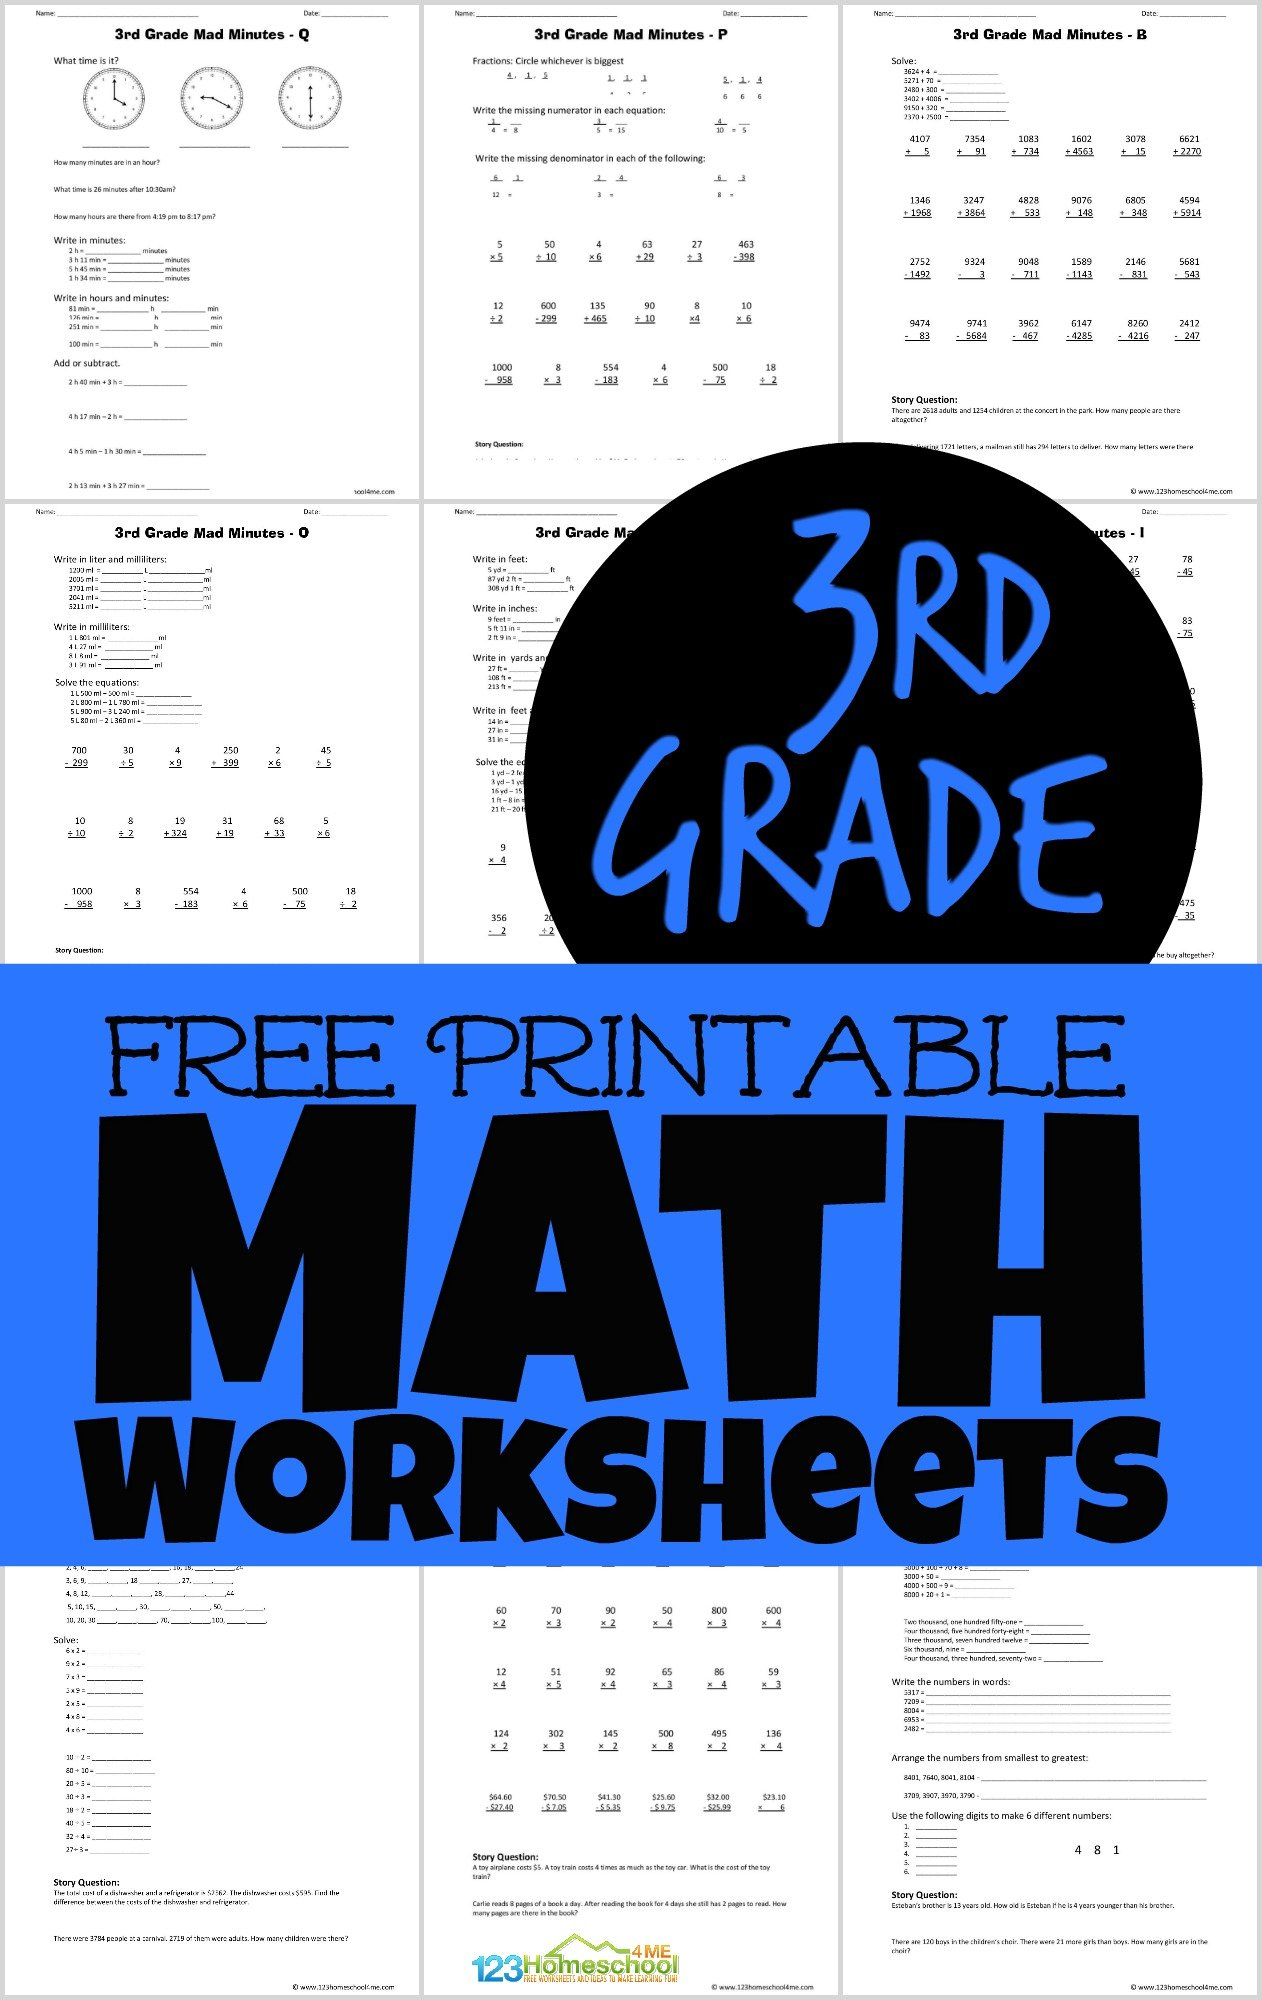 3rd-grade-math-fsa-worksheets-3rd-grade-math-worksheets